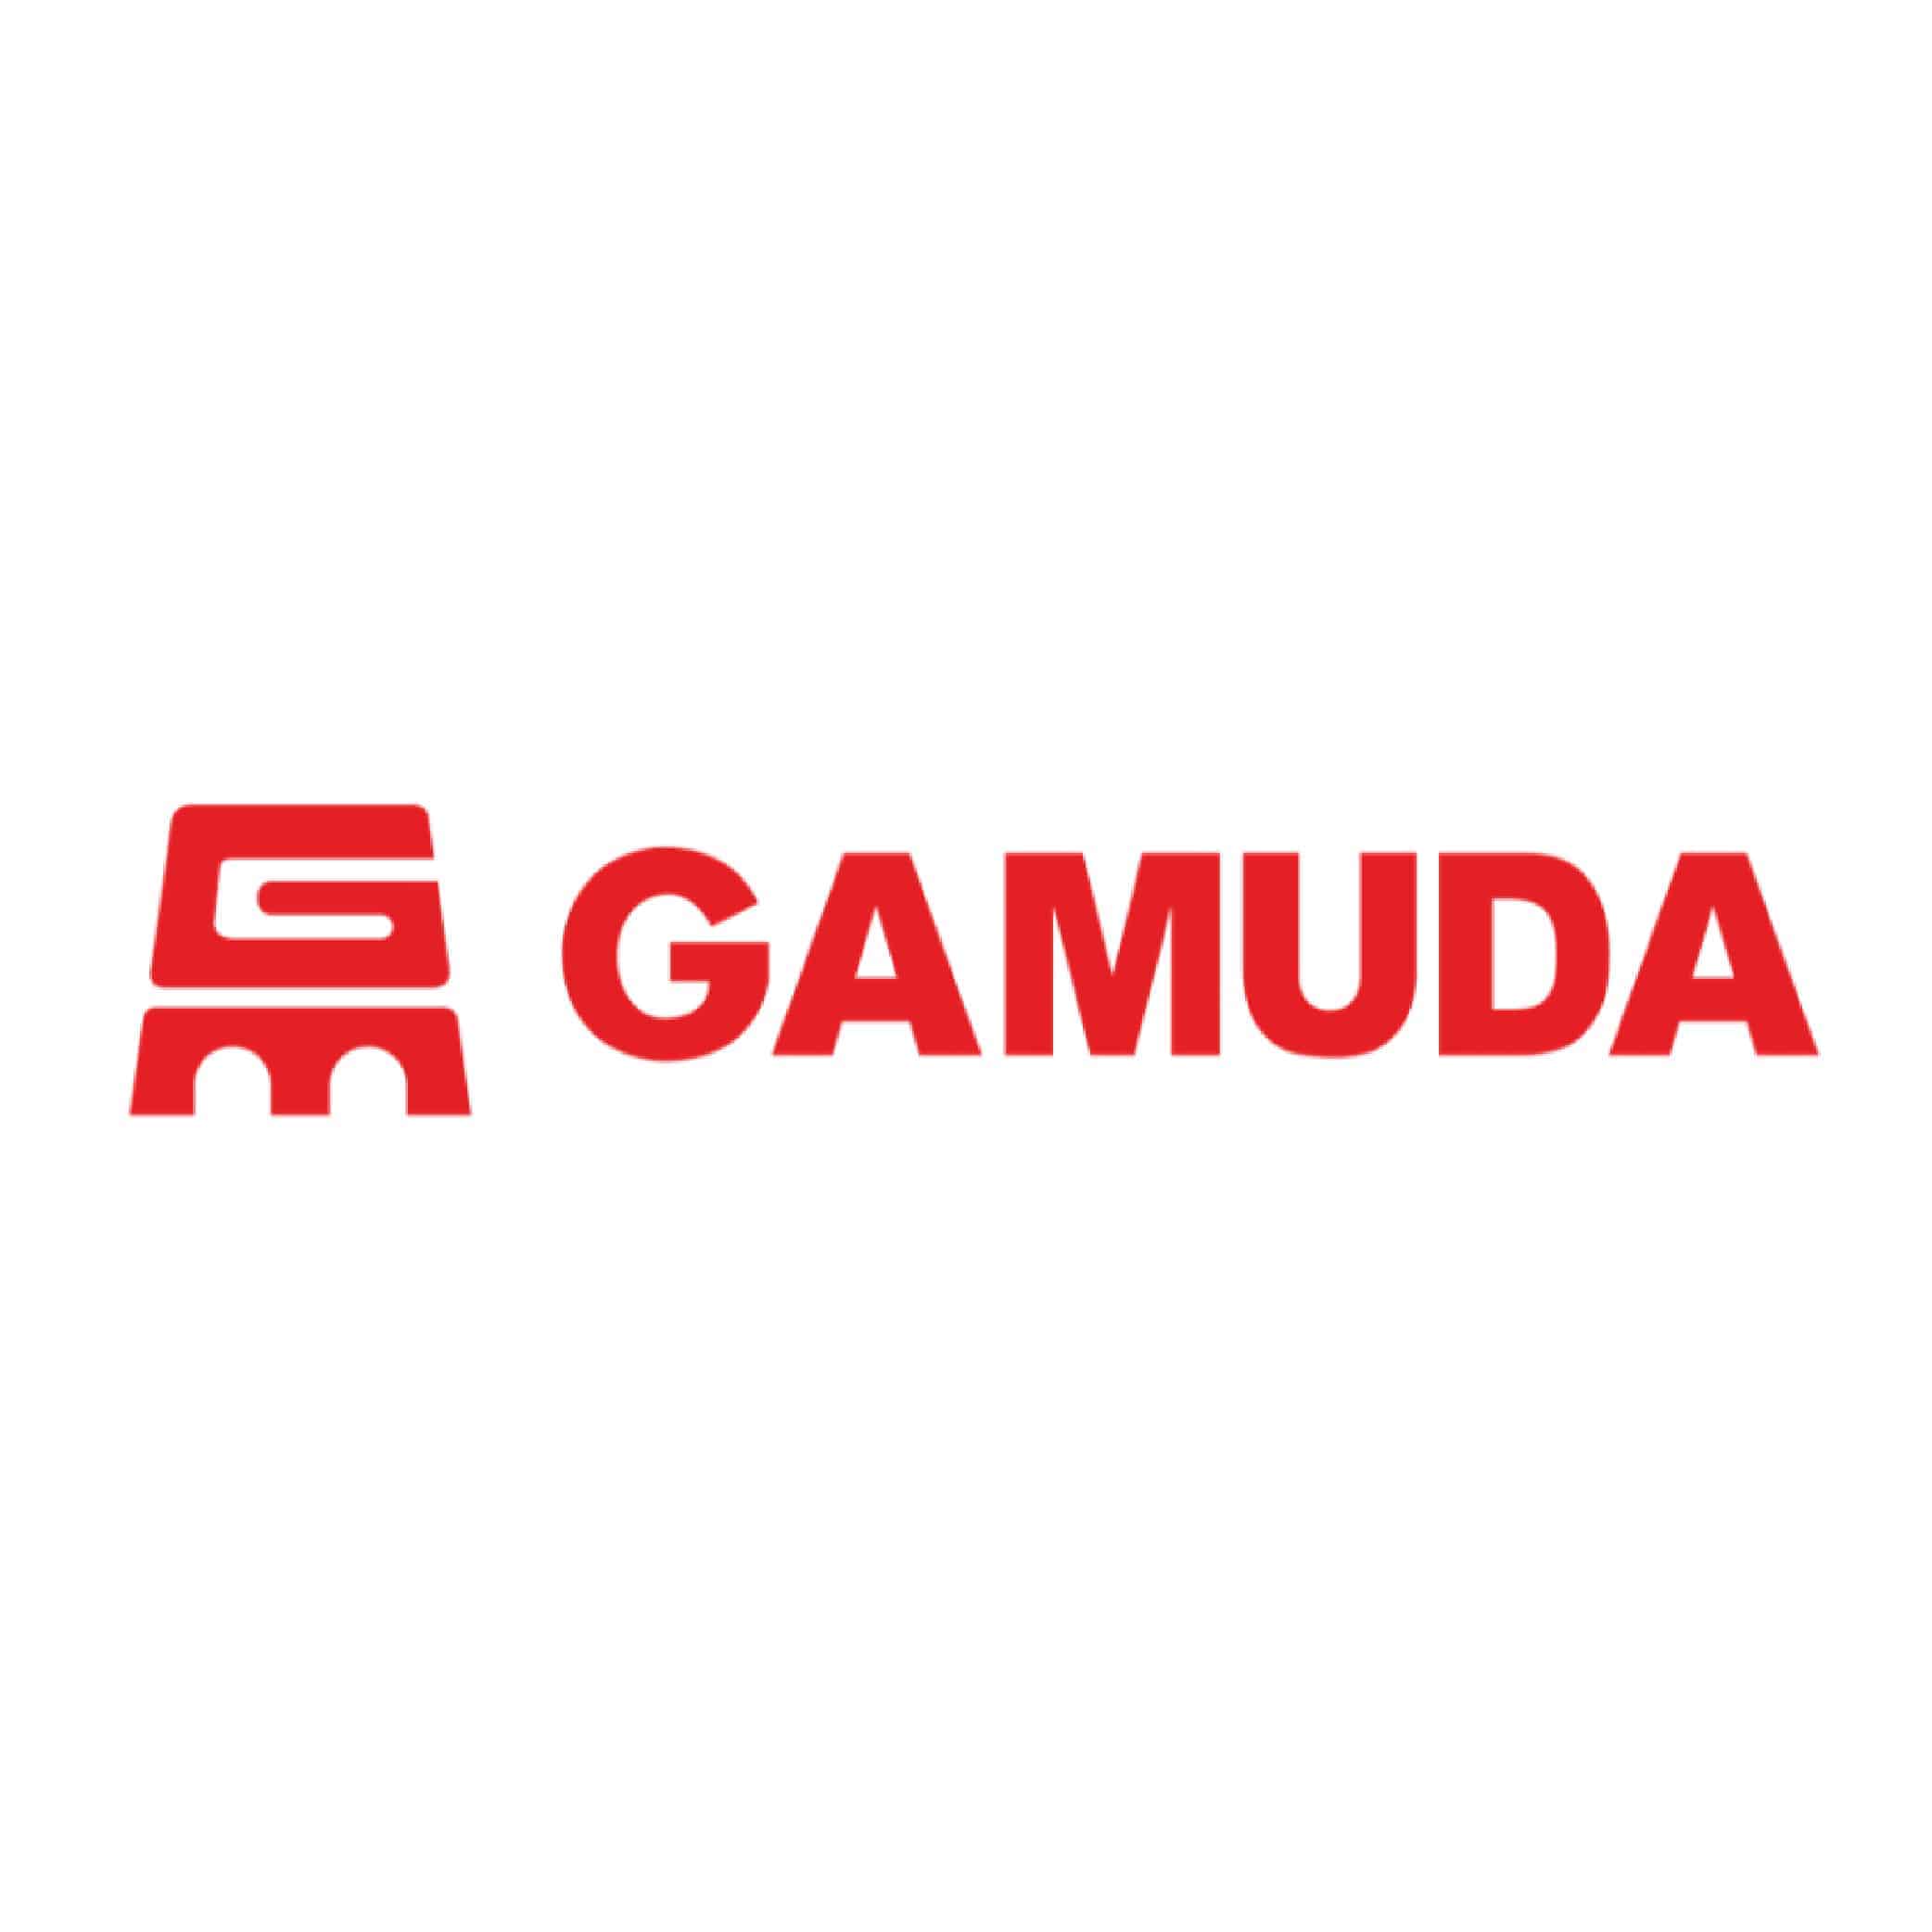 Gamuda logo